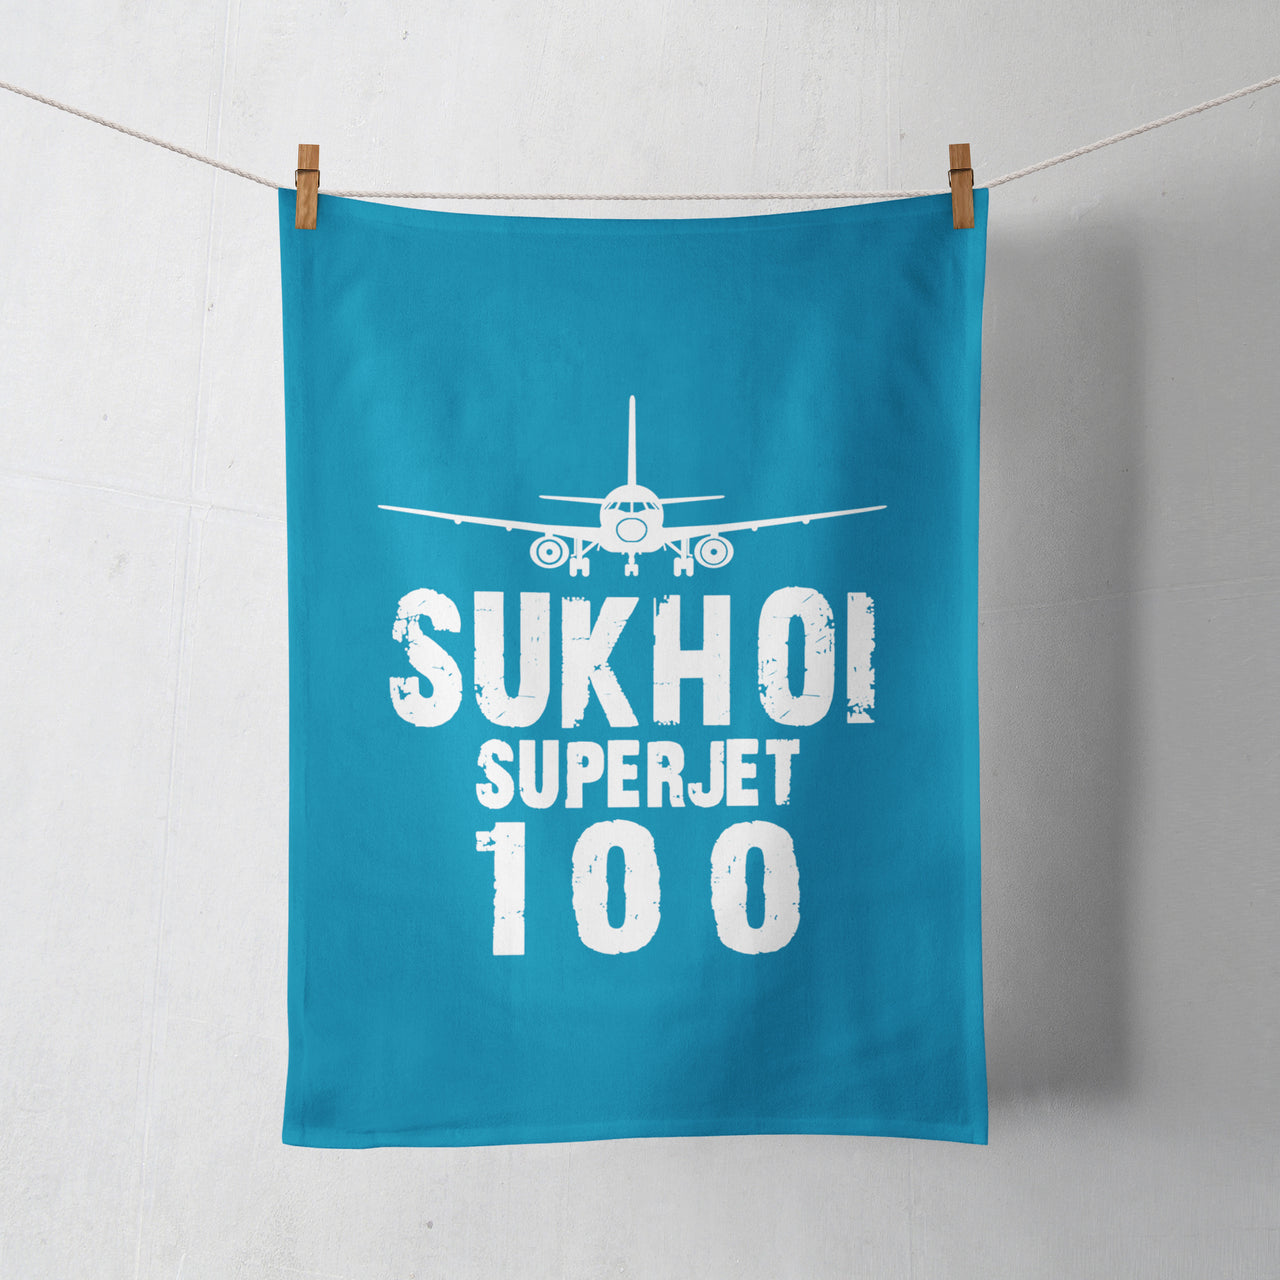 Sukhoi Superjet 100 & Plane Designed Towels